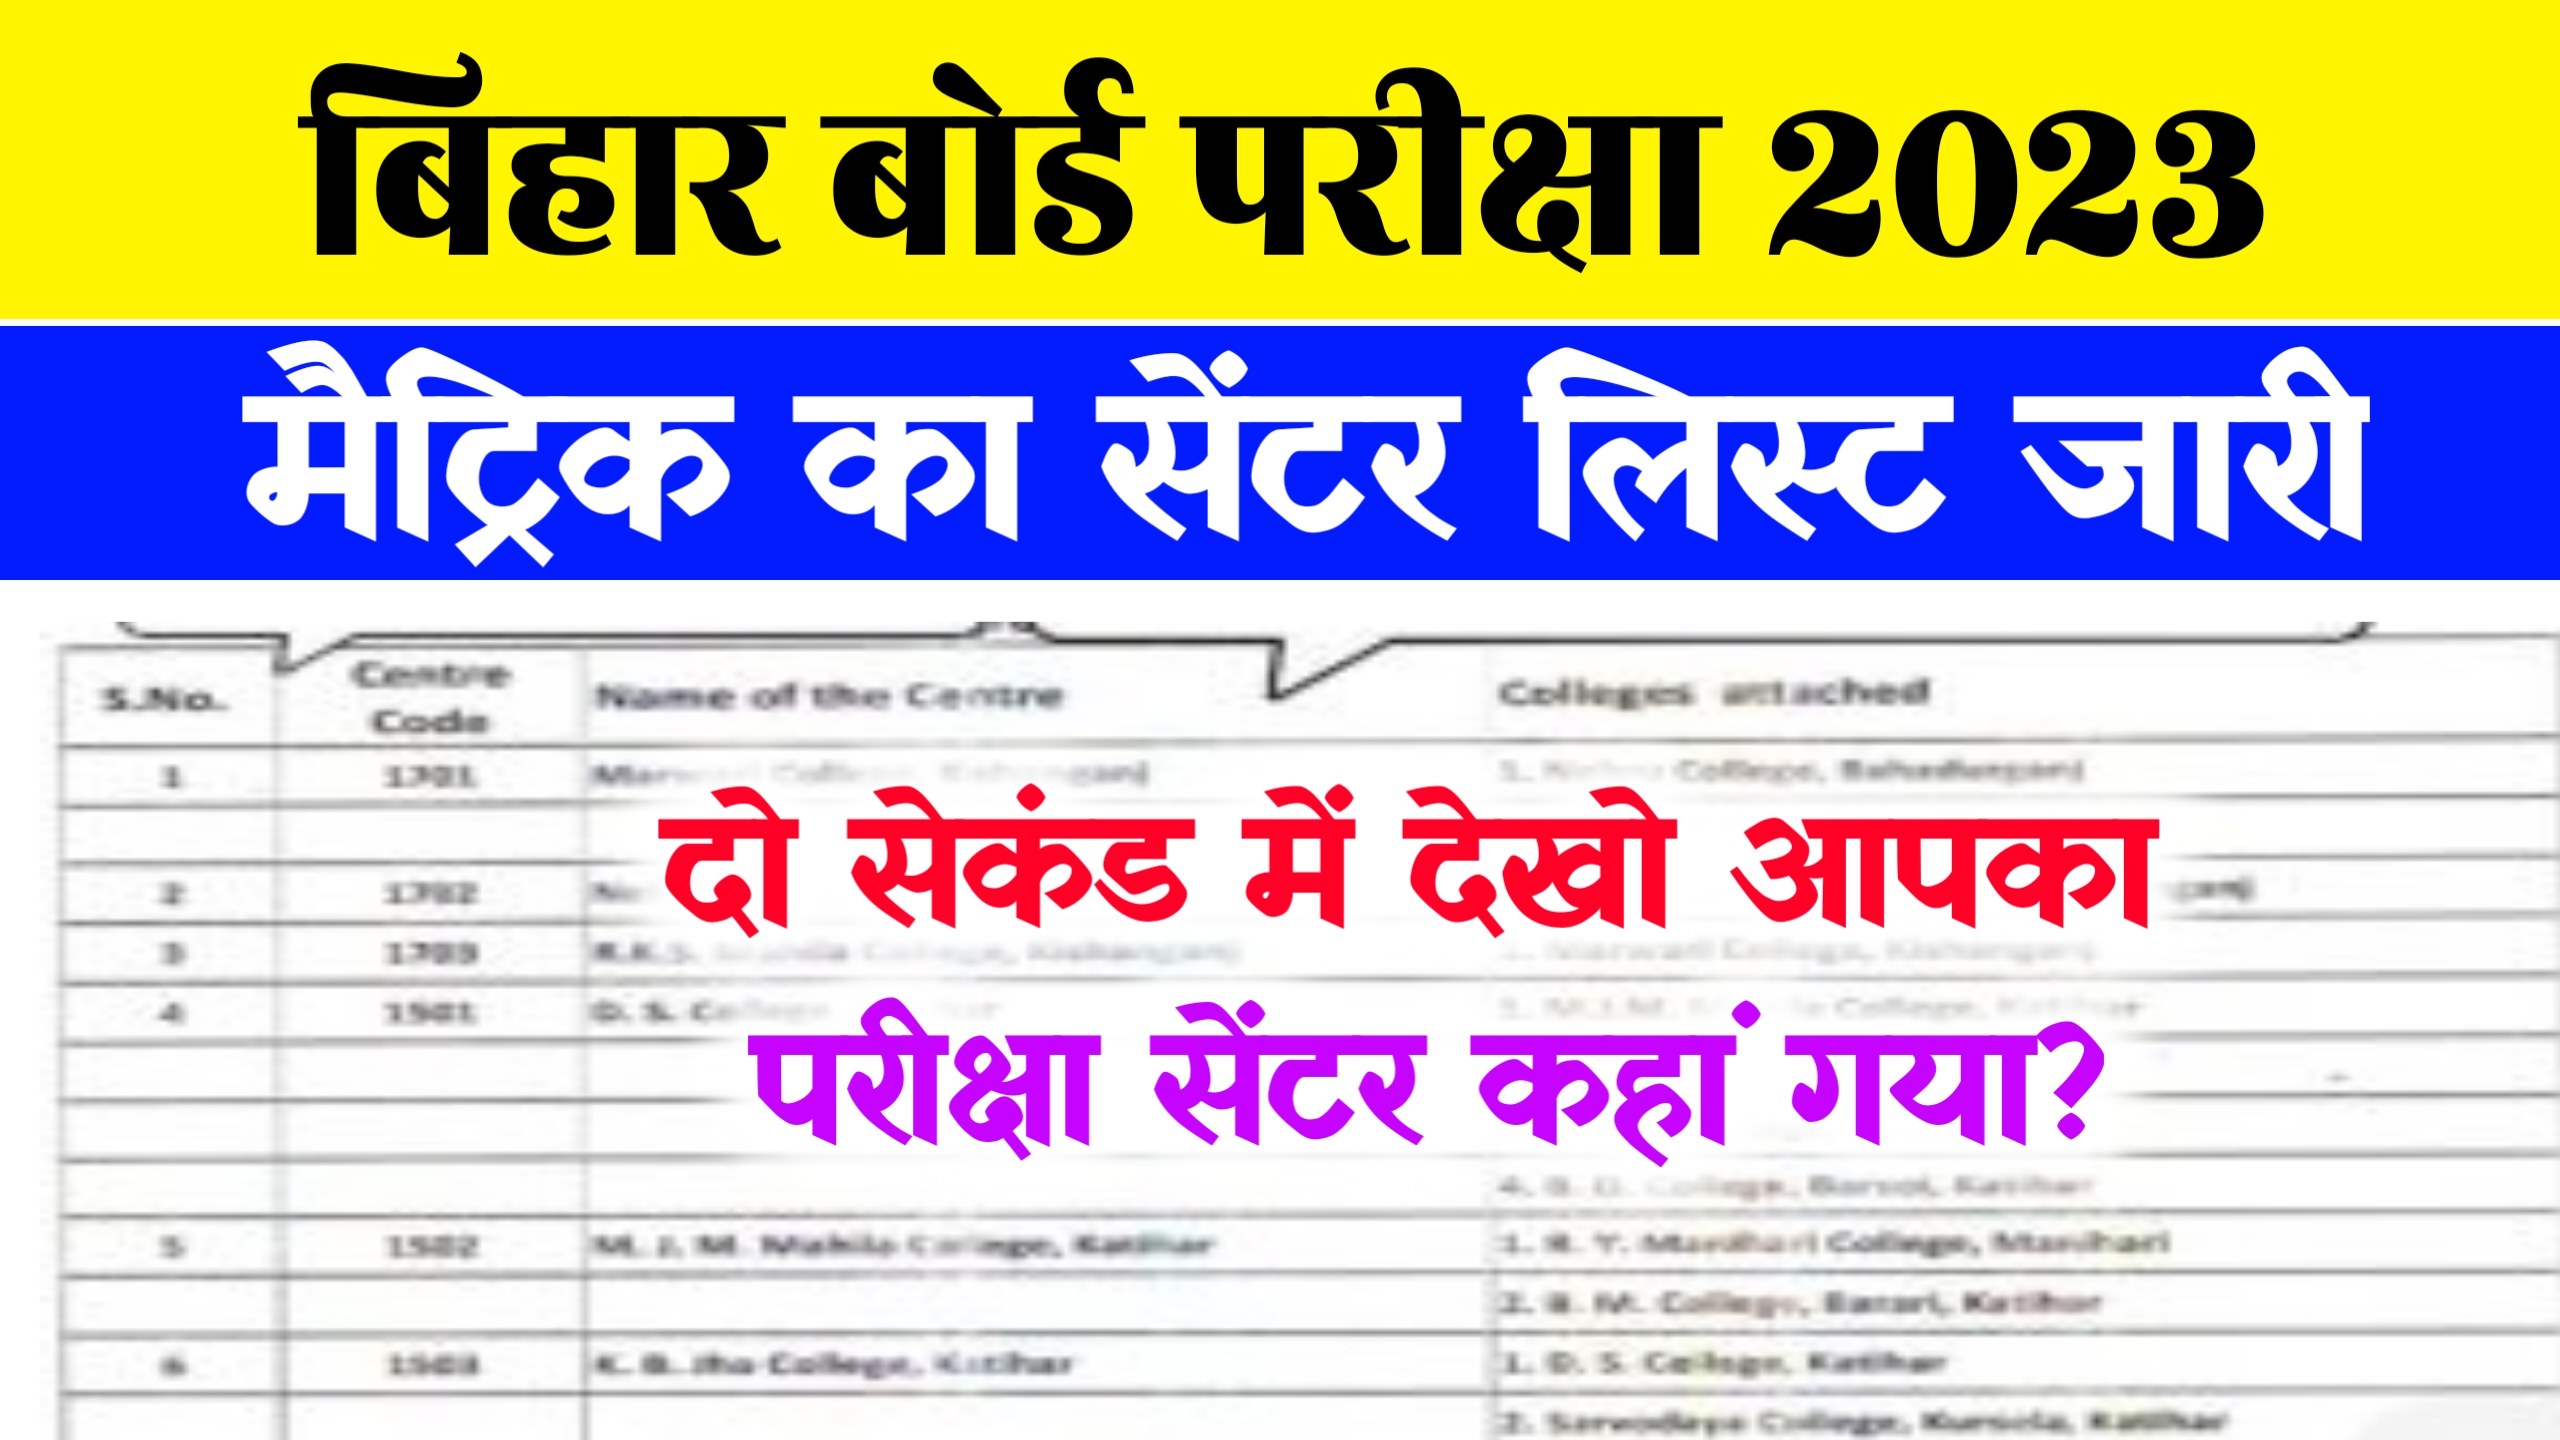 Bihar Board 10th Exam Center List 2023 Download Biharboardonline.com